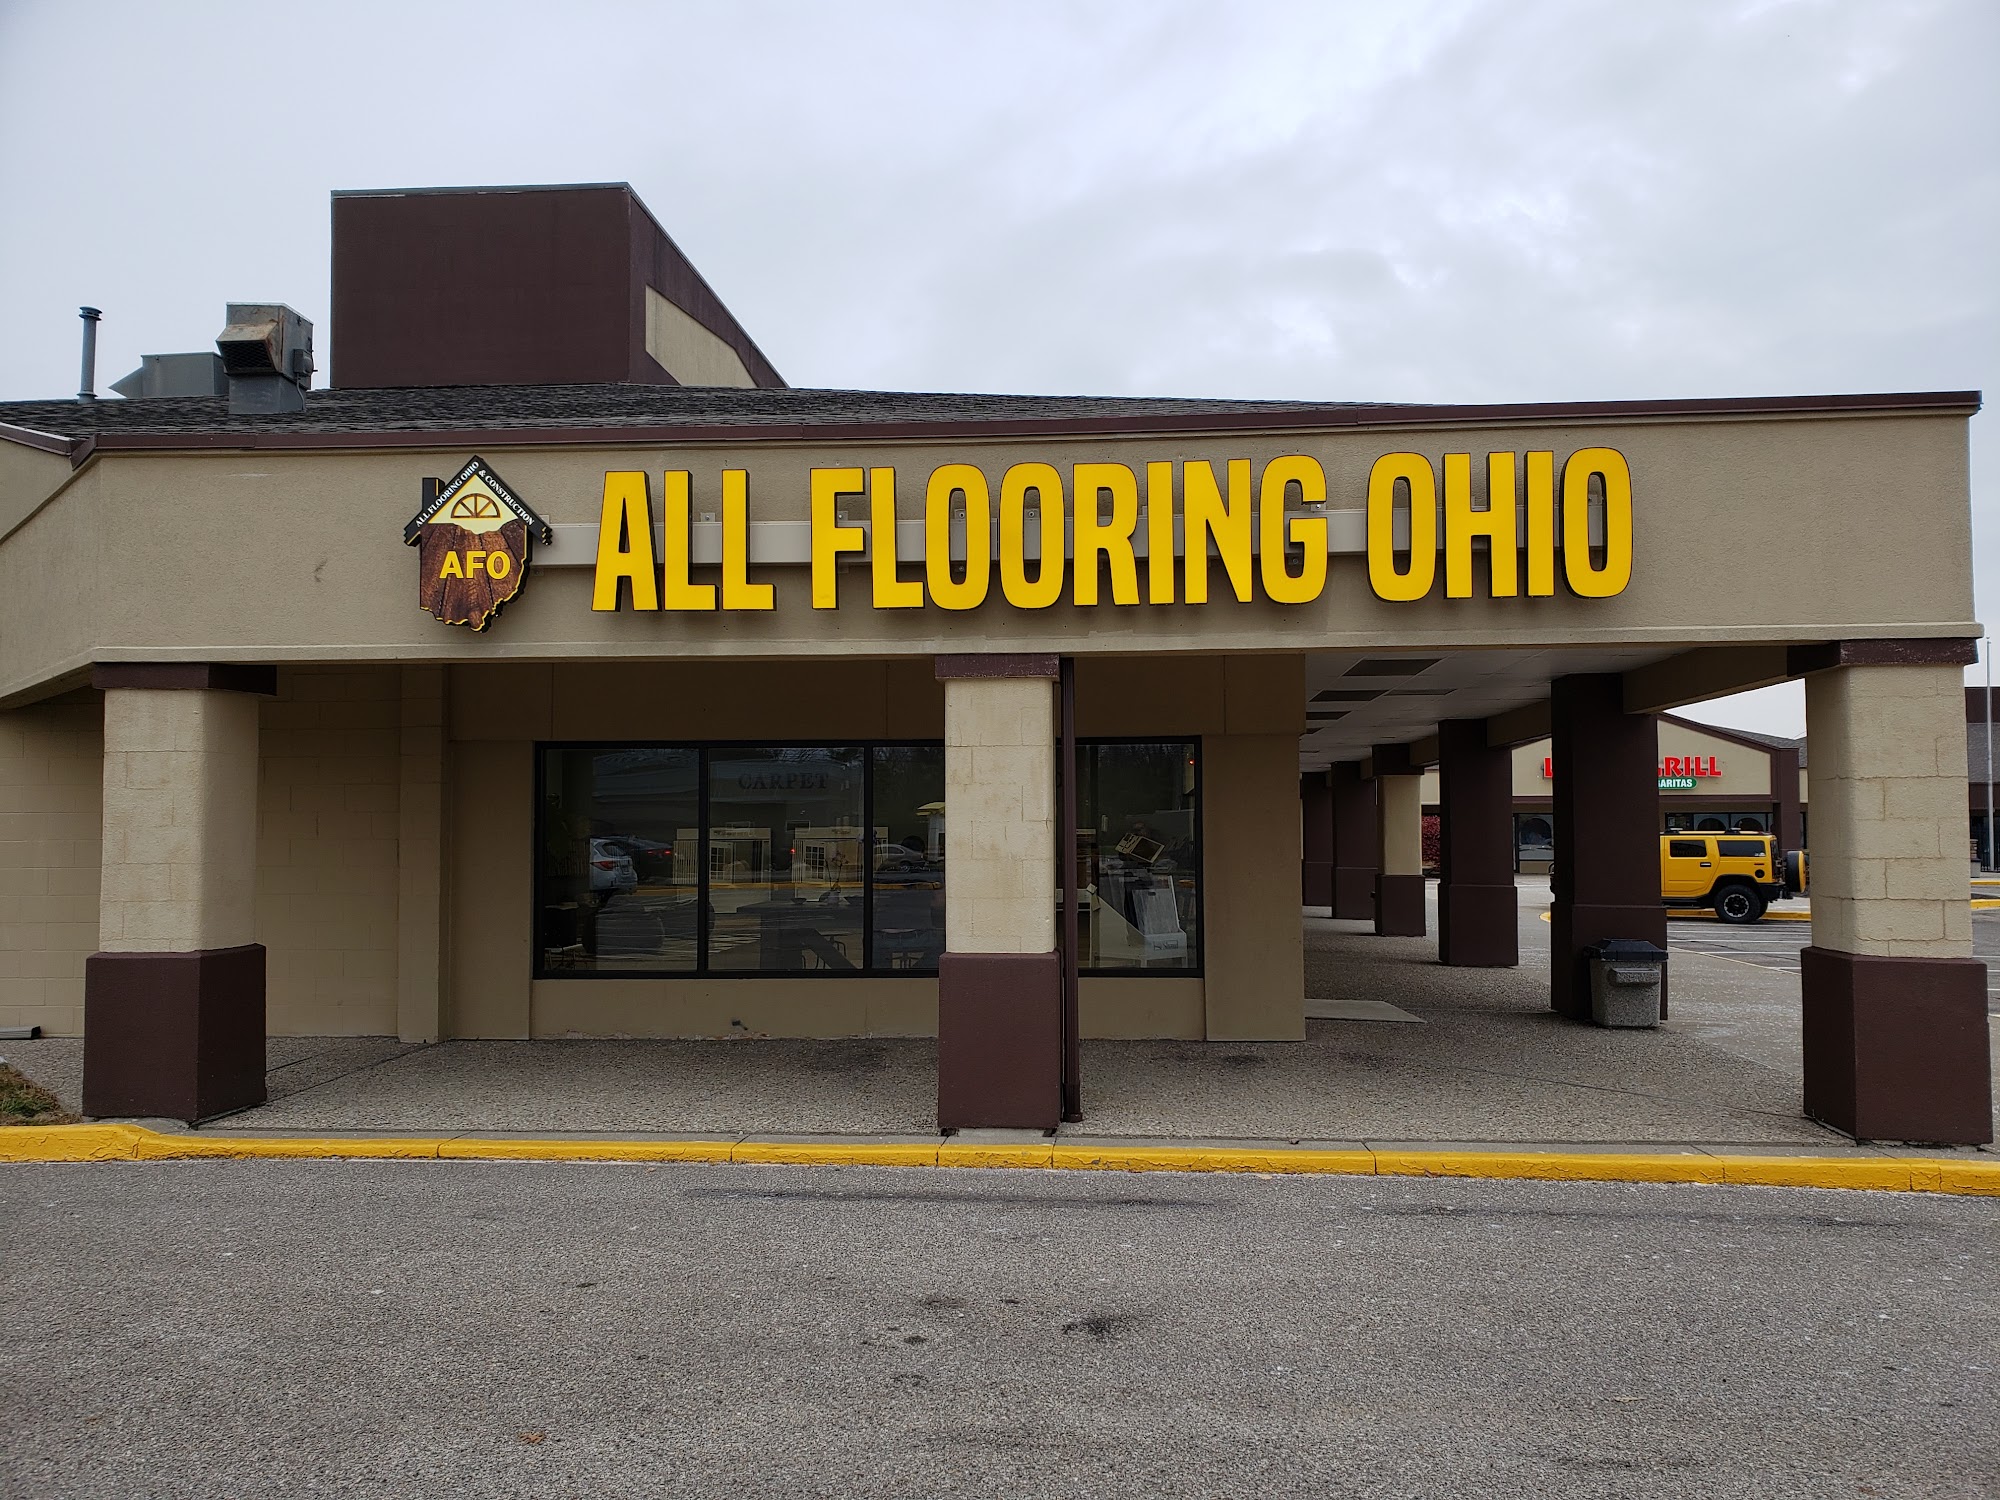 All Flooring Ohio